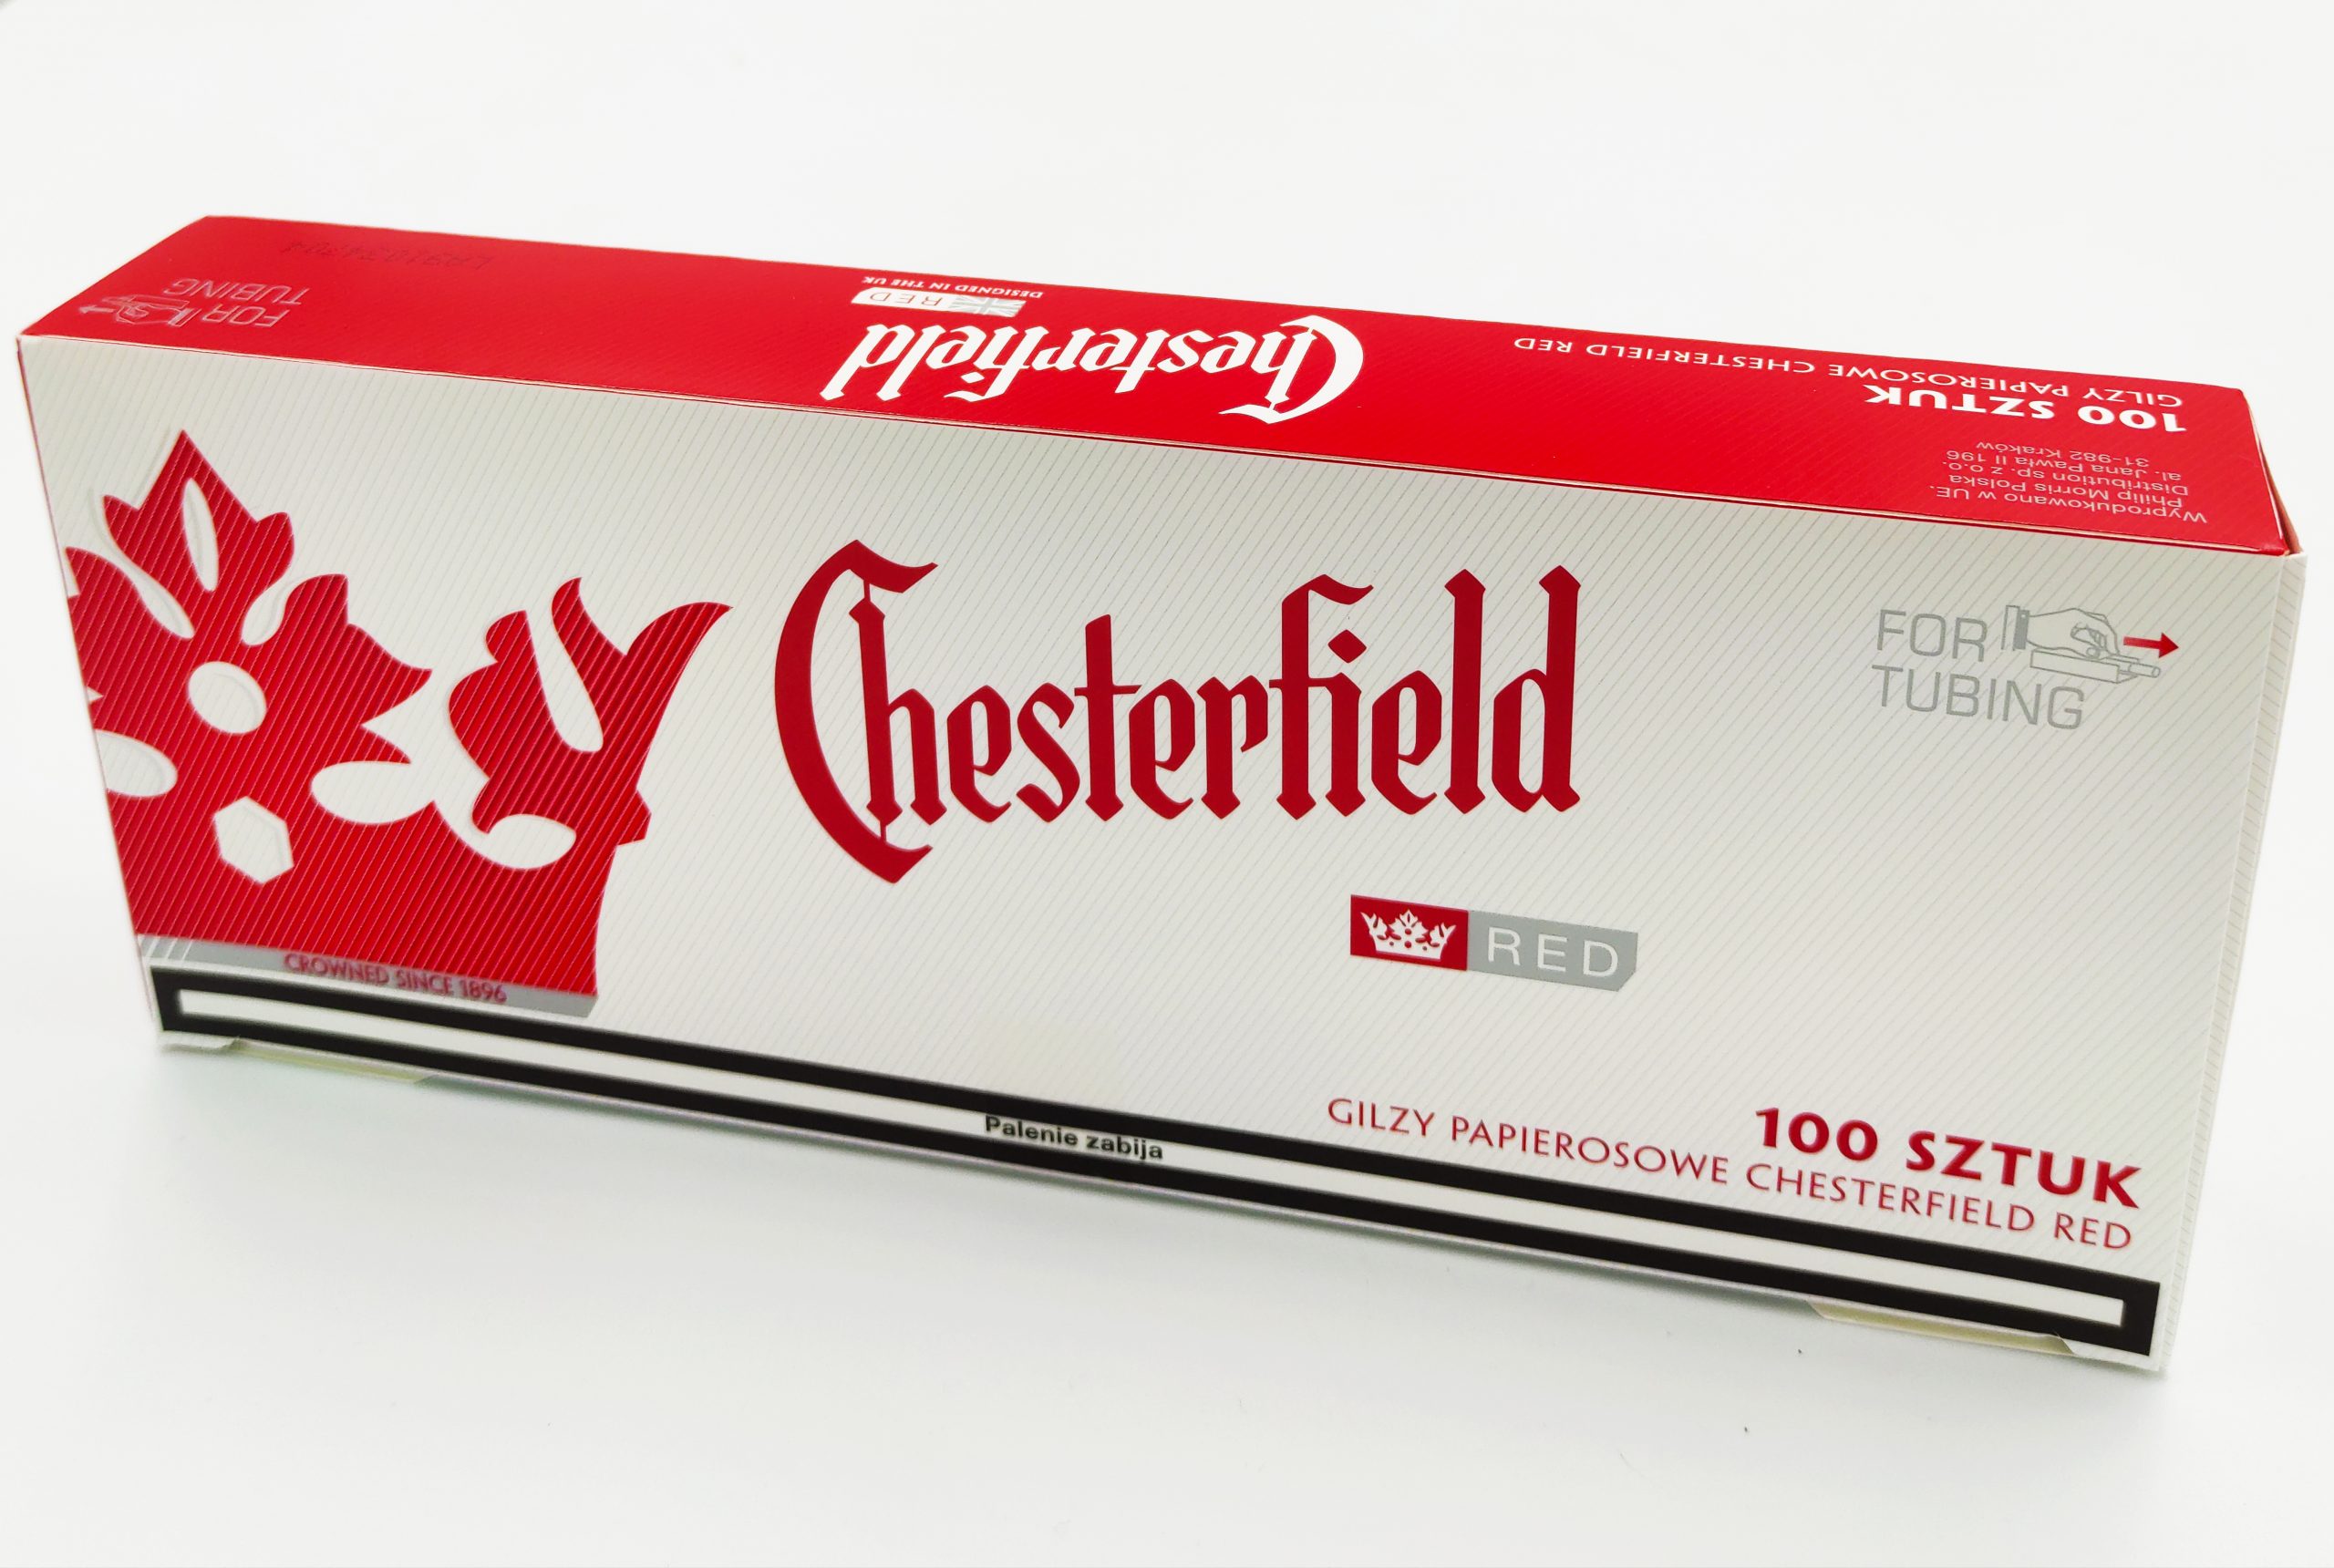 gilzy chesterfield red 100szt - 4zł